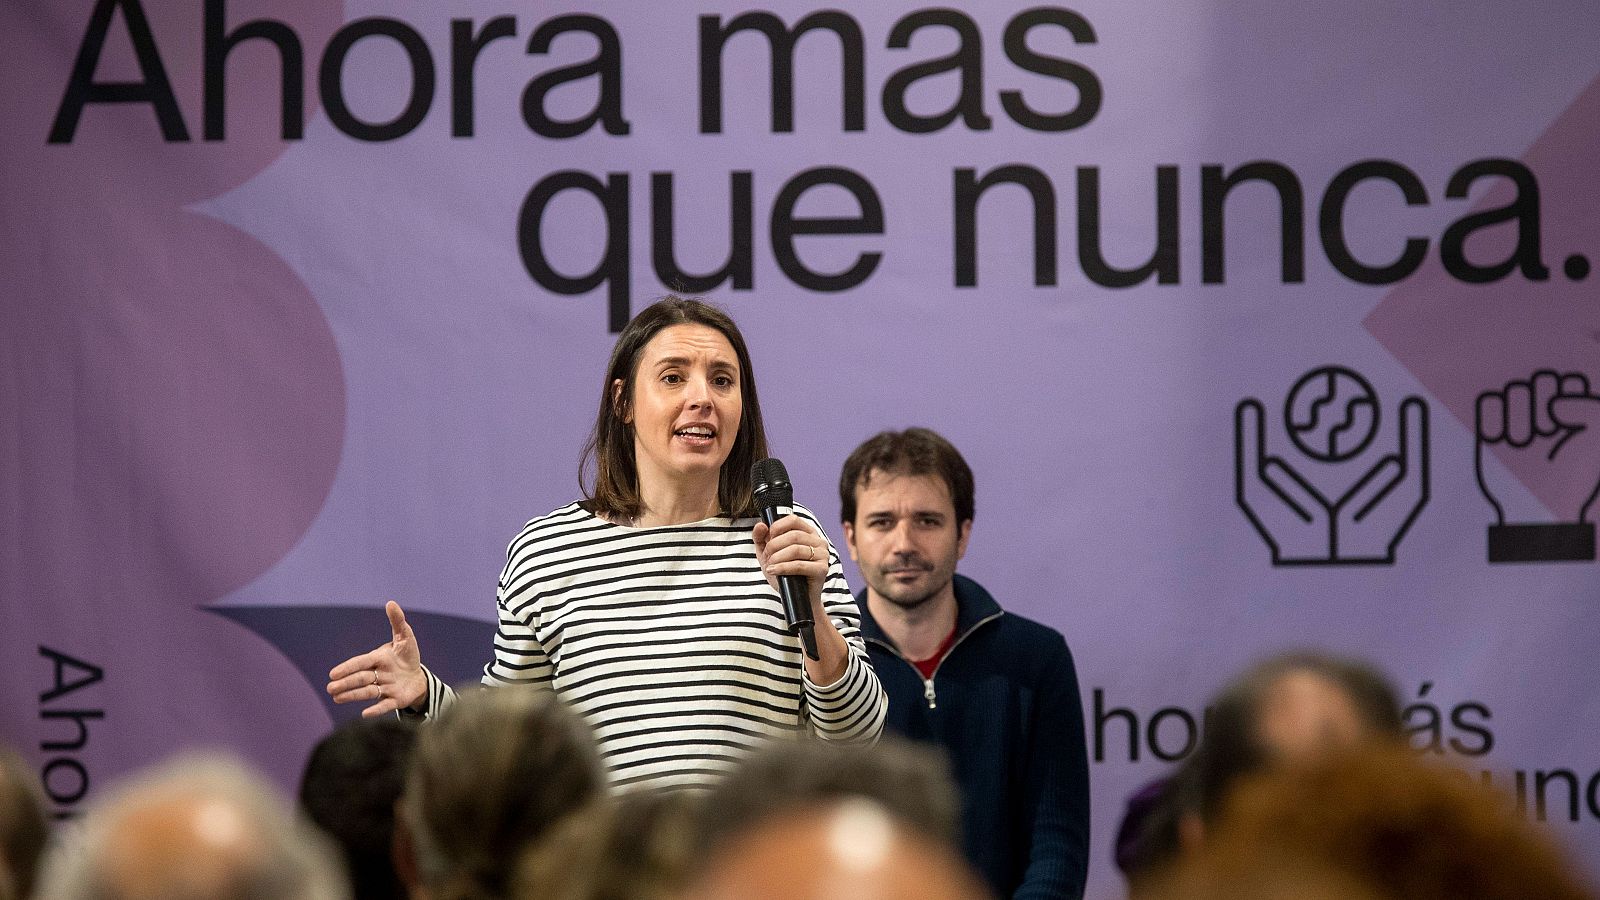 La candidata a las elecciones europeas por Podemos Irene Montero, durante la presentación de su candidatura